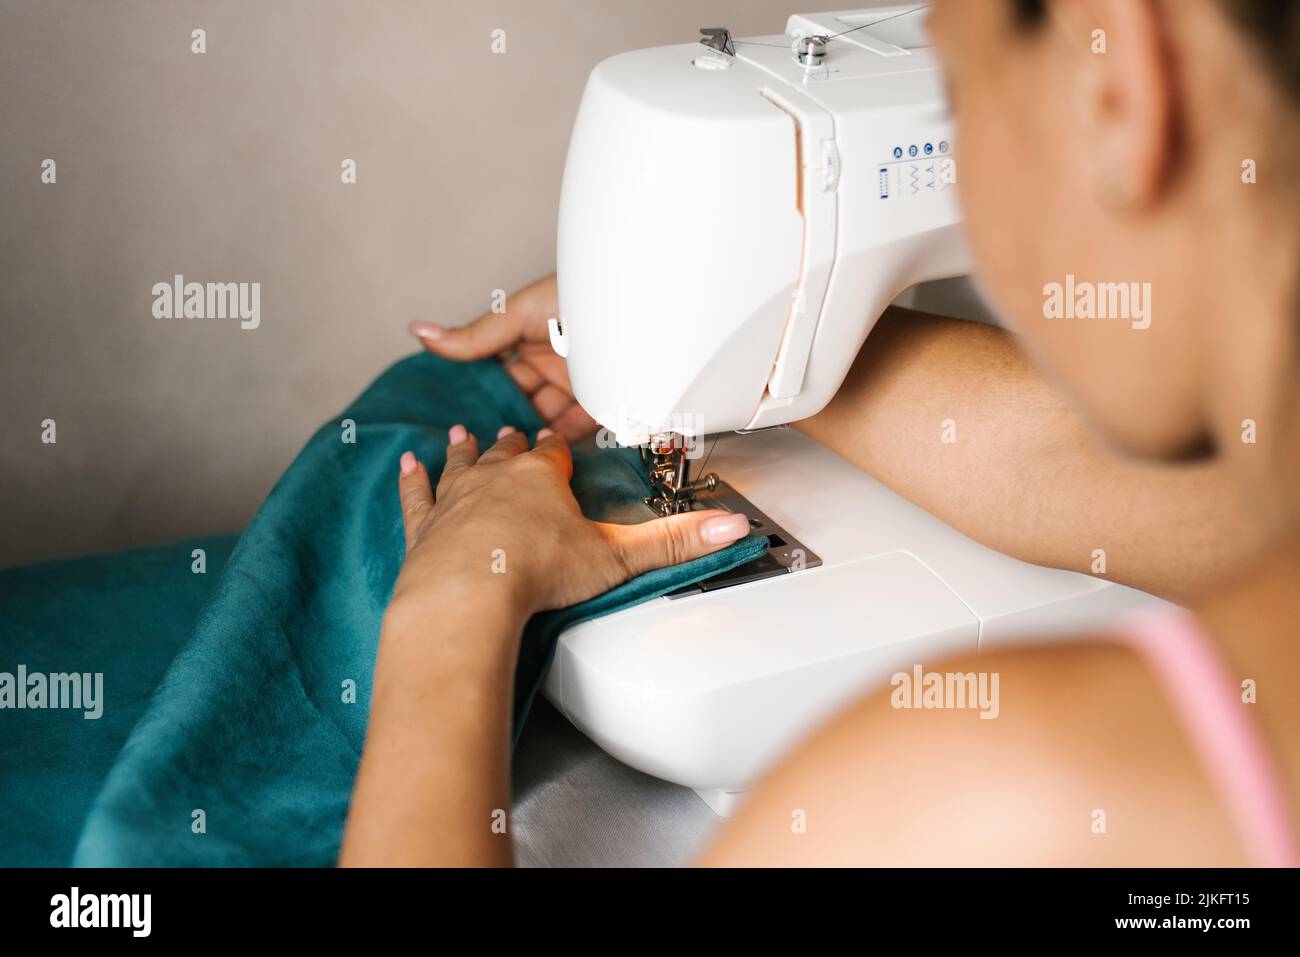 Close-up of a fashion designer sewing machine stitching fabric Stock Photo